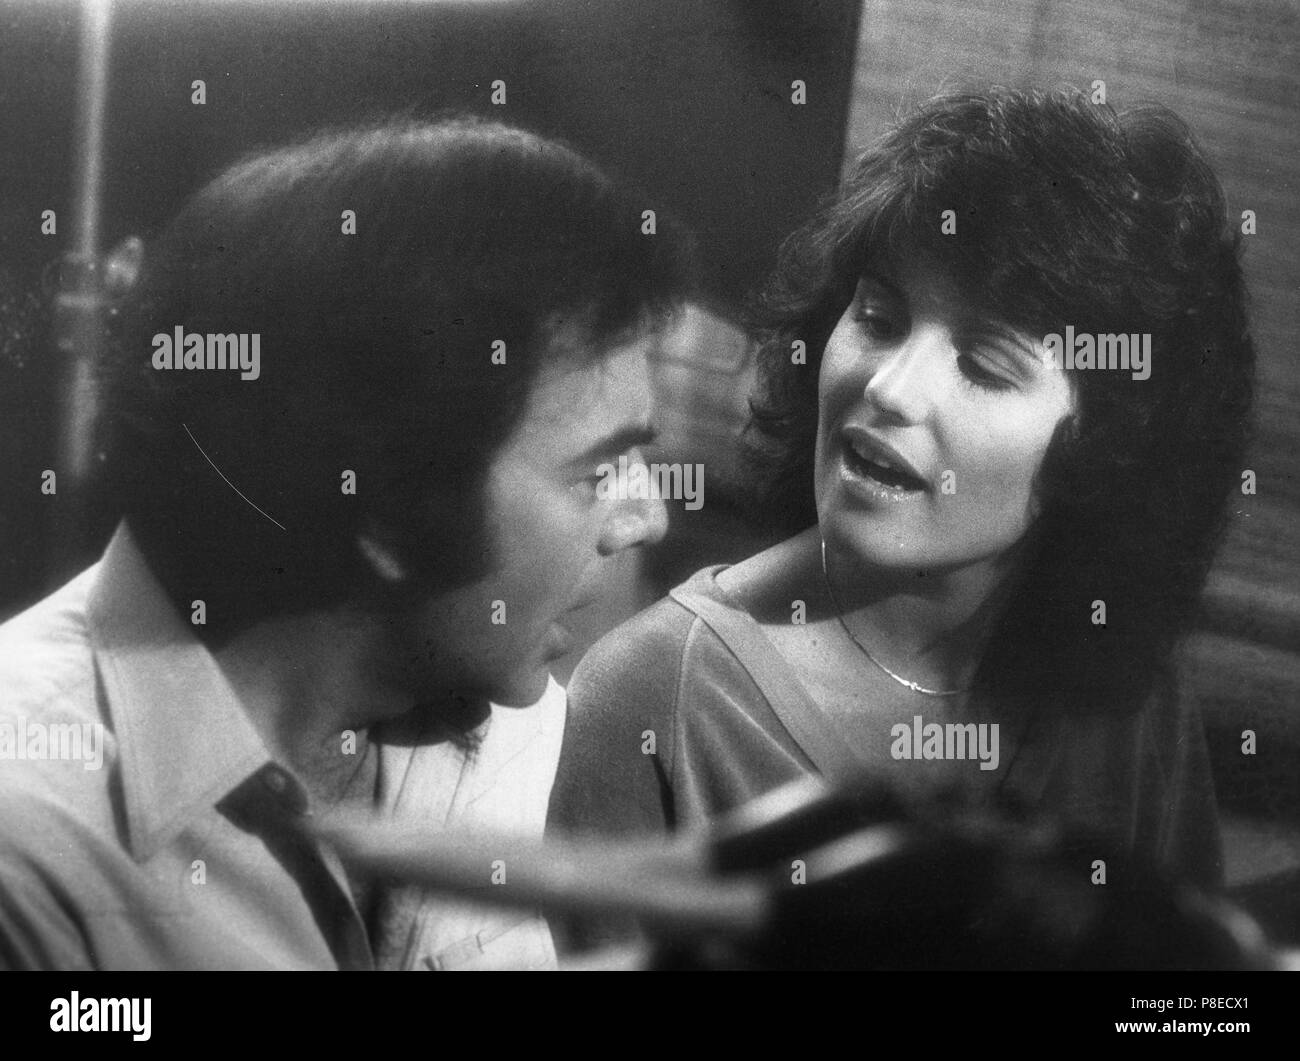 Le chanteur de Jazz (1980) Neil Diamond, Lucie Arnaz, Date : 1980 Banque D'Images